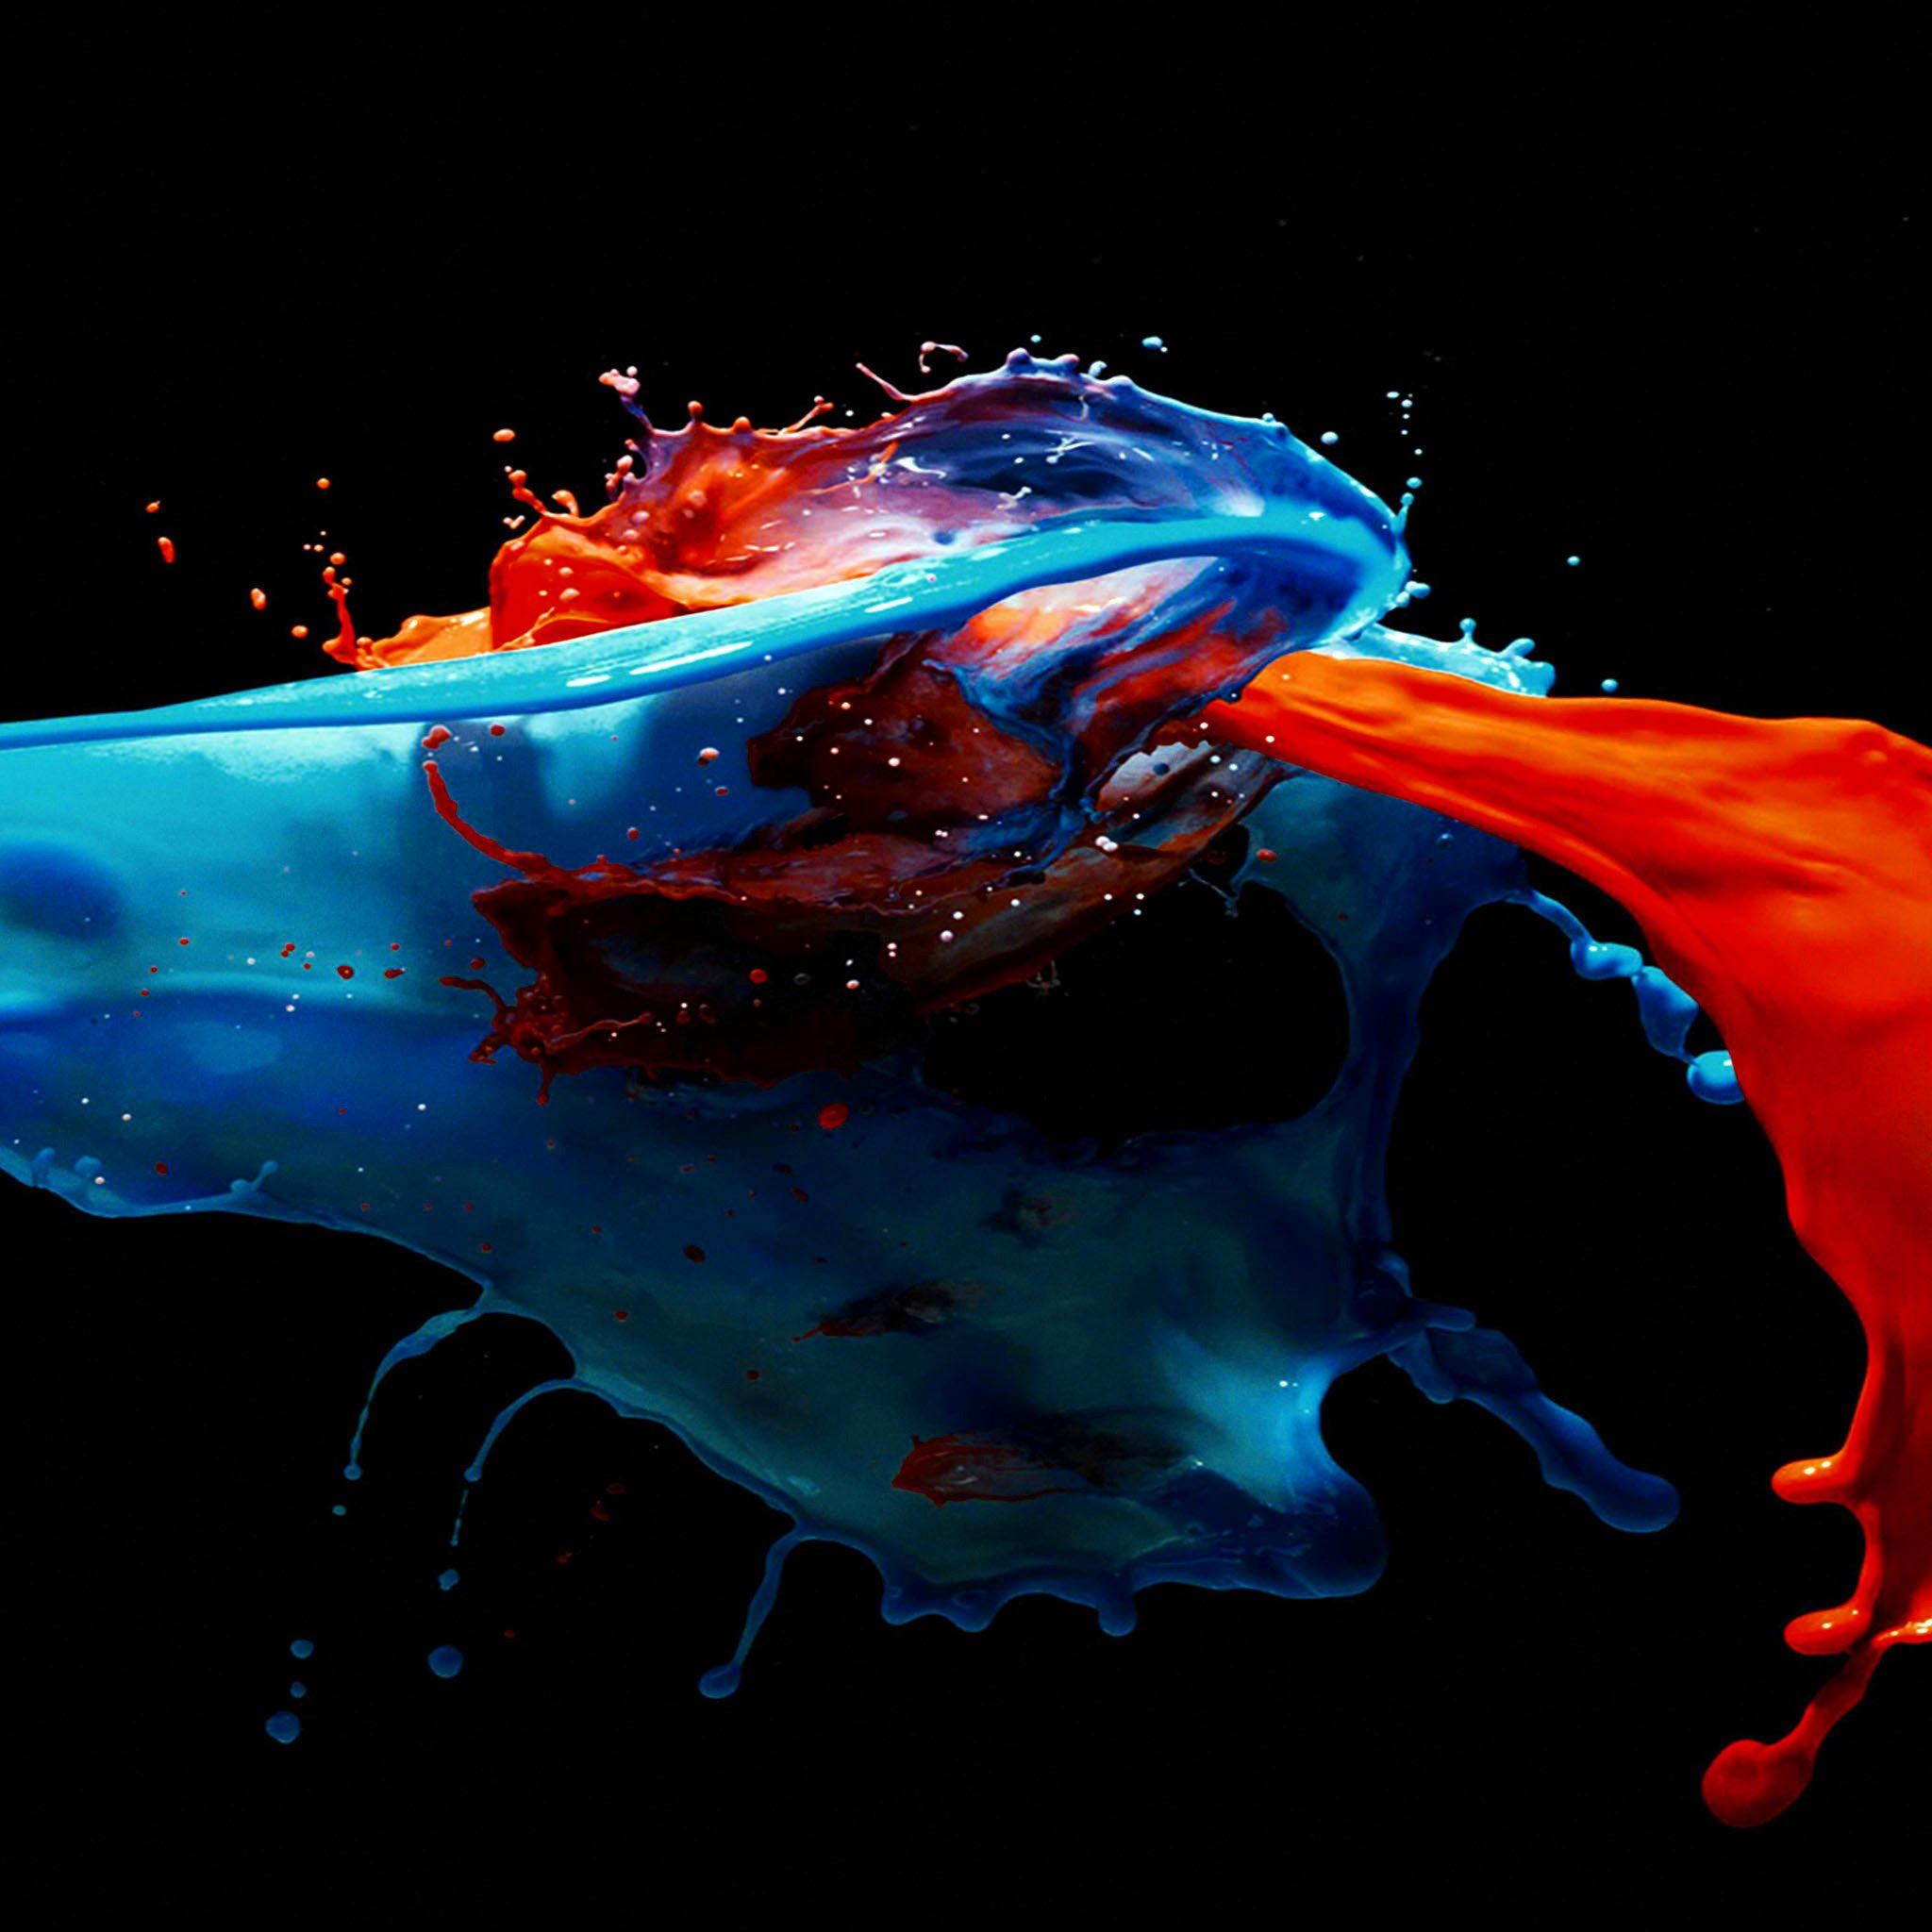 Paint Splash Art Illust Dark Blue Red iPad Air Wallpaper Free Download